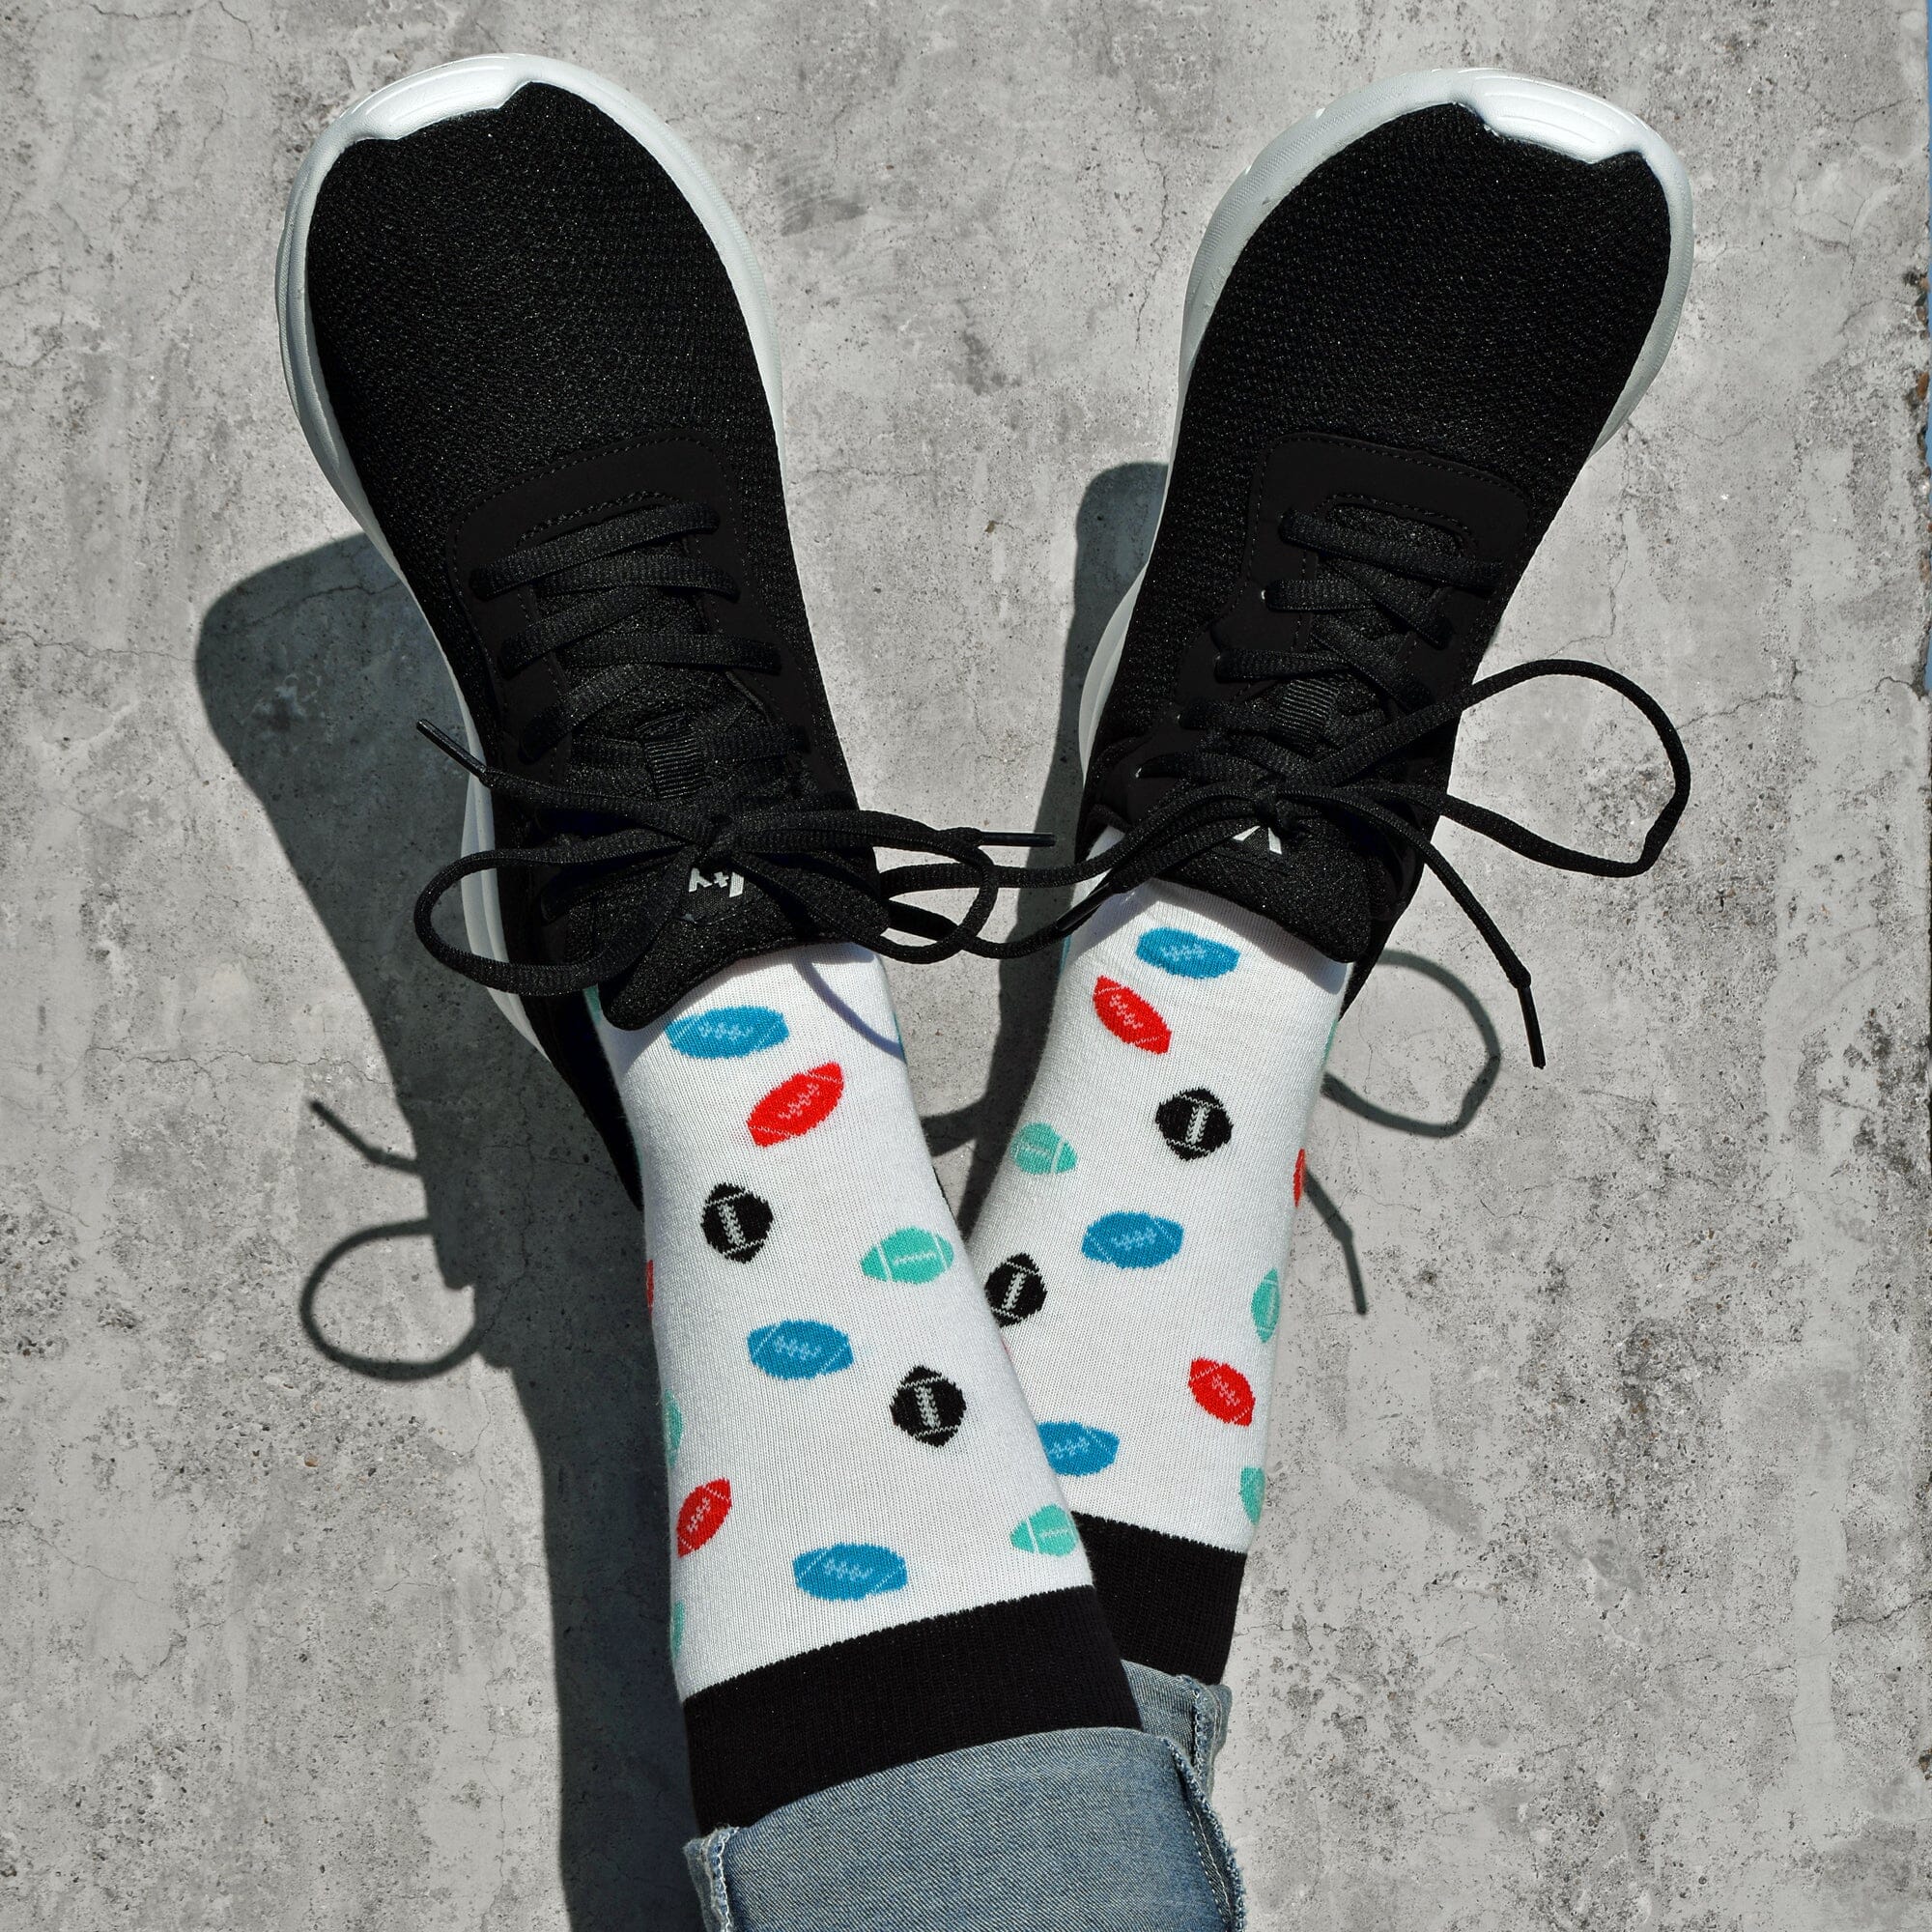 Schwarz/weiße American Football Socken mit bunten Footbällen